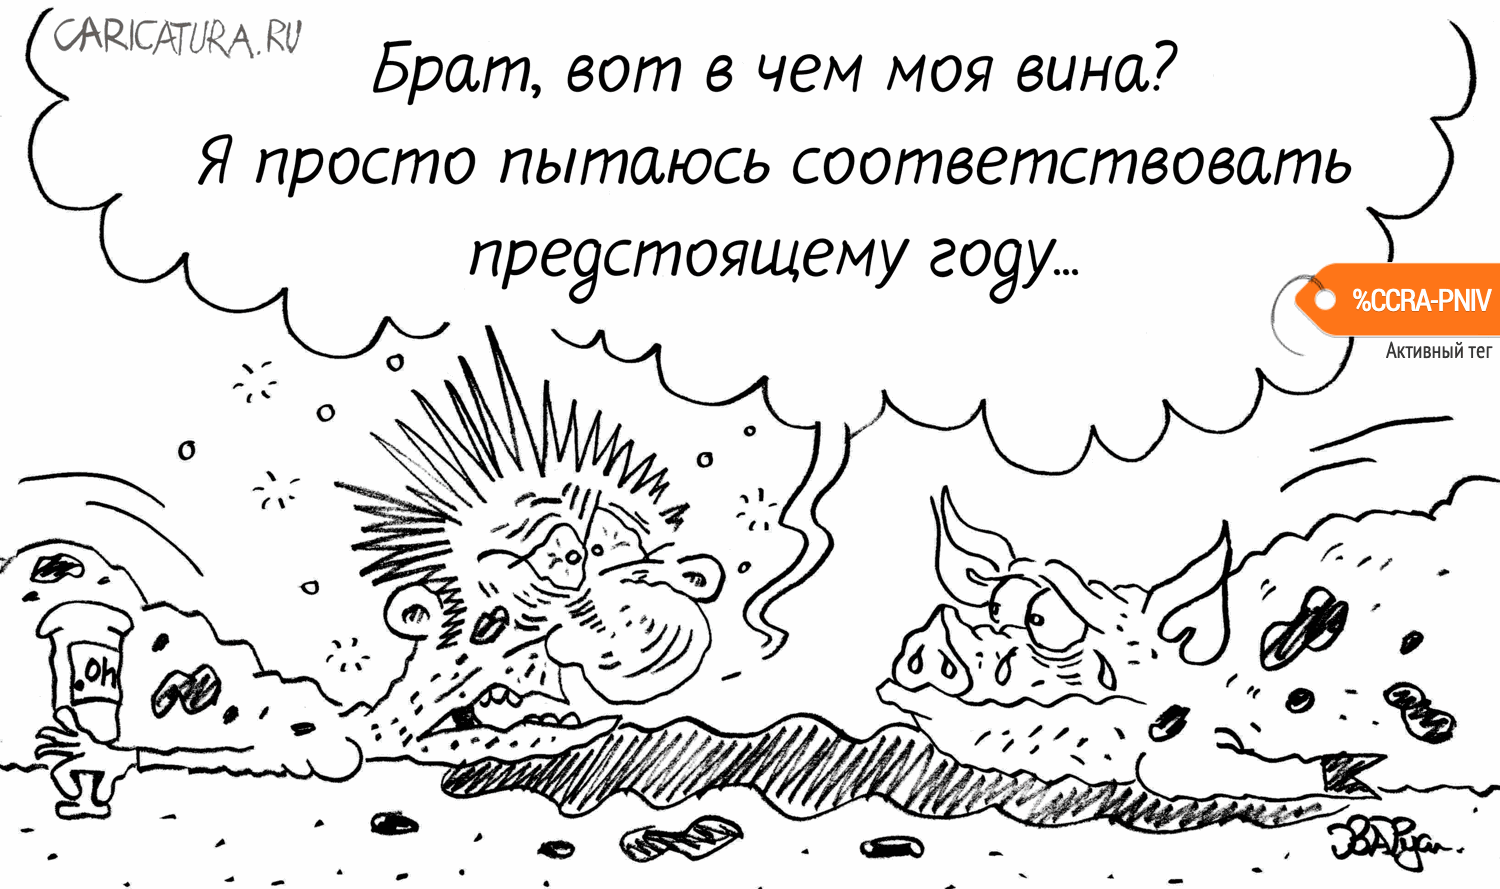 Карикатура "Праздник к нам приходит...", Руслан Валитов